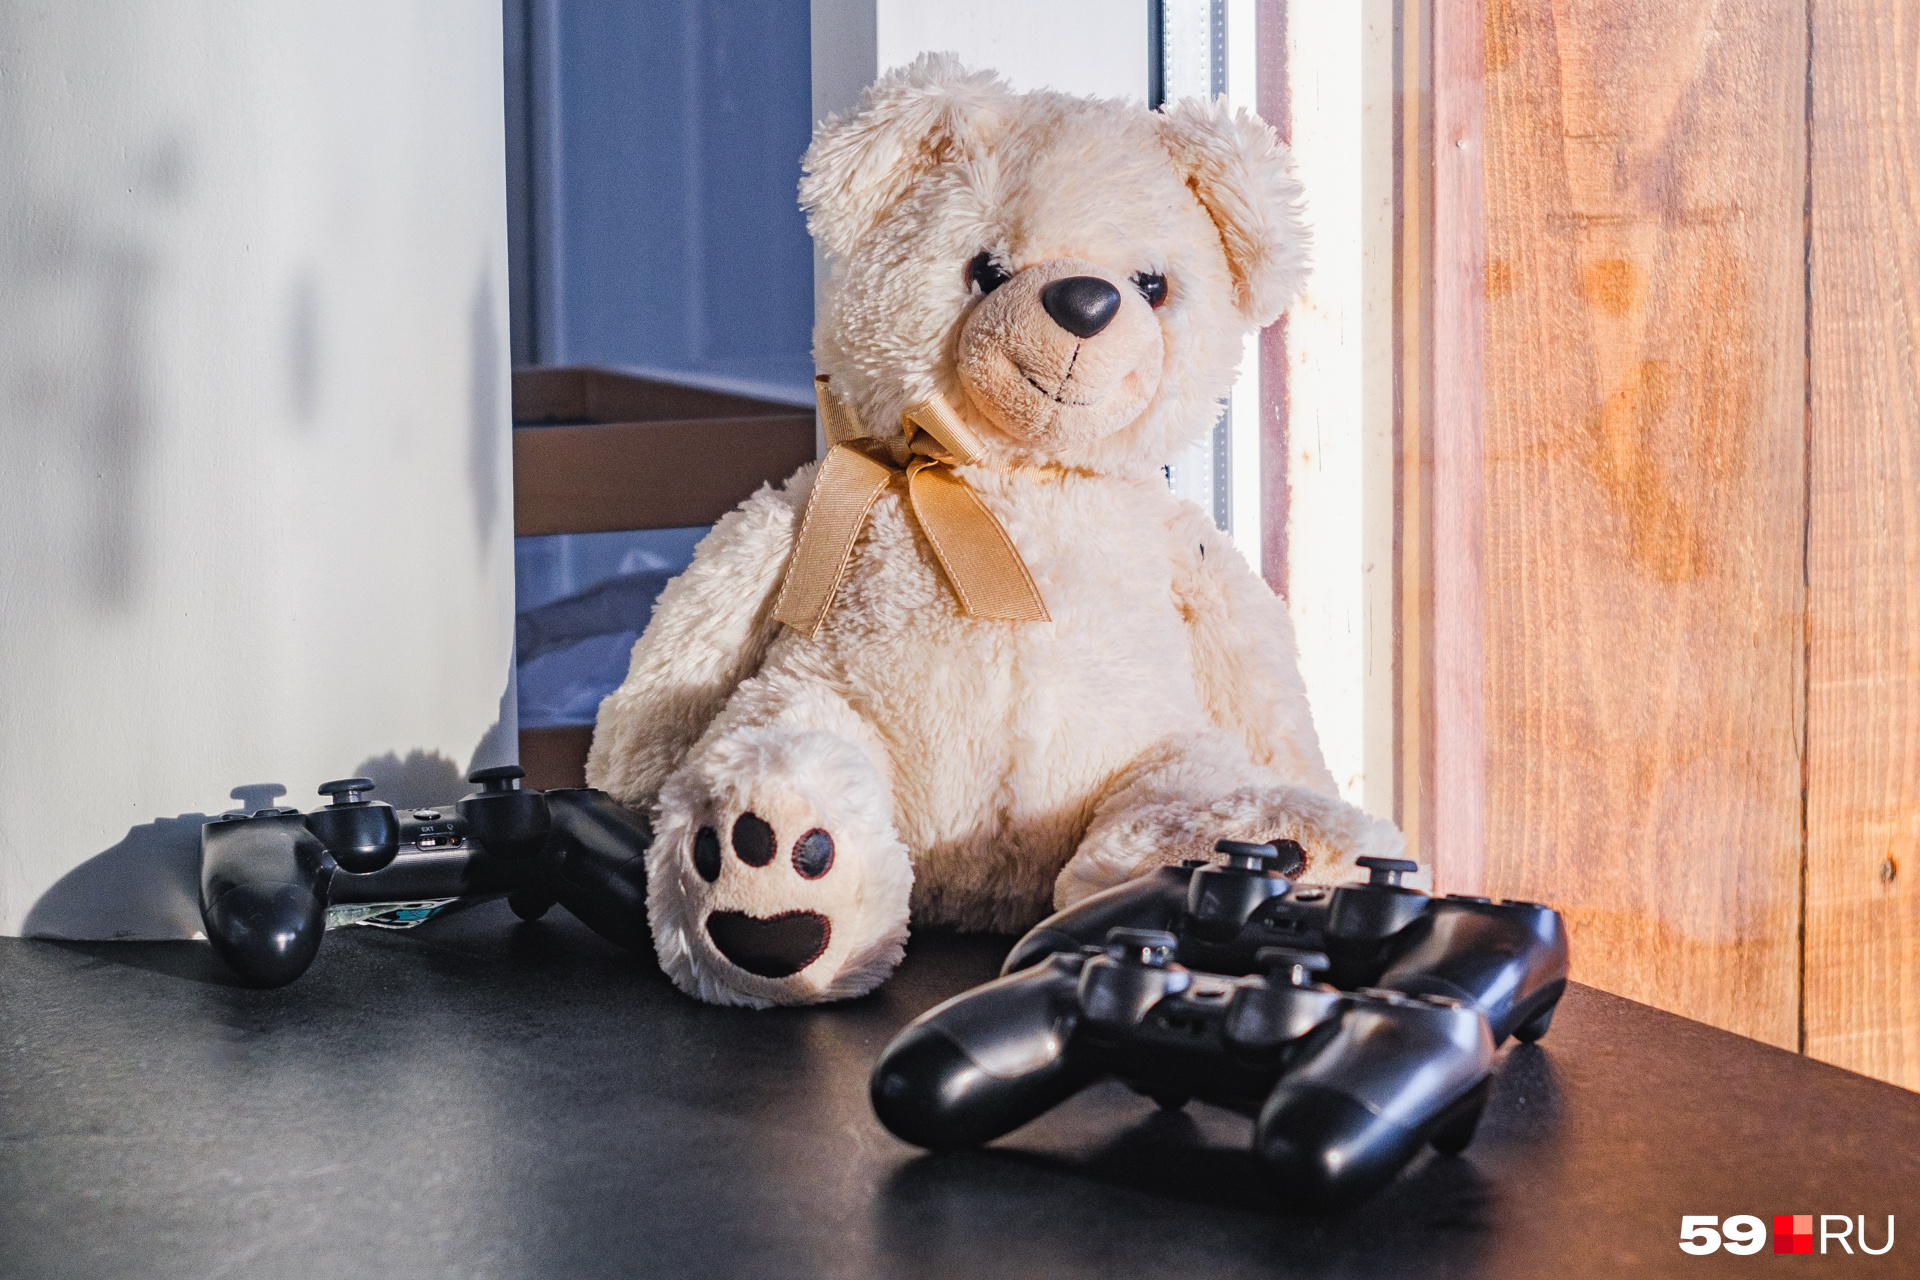 Вряд ли кто-то из сотрудников играет с этим медведем, а вот геймпады явно пользуются спросом во время перерывов